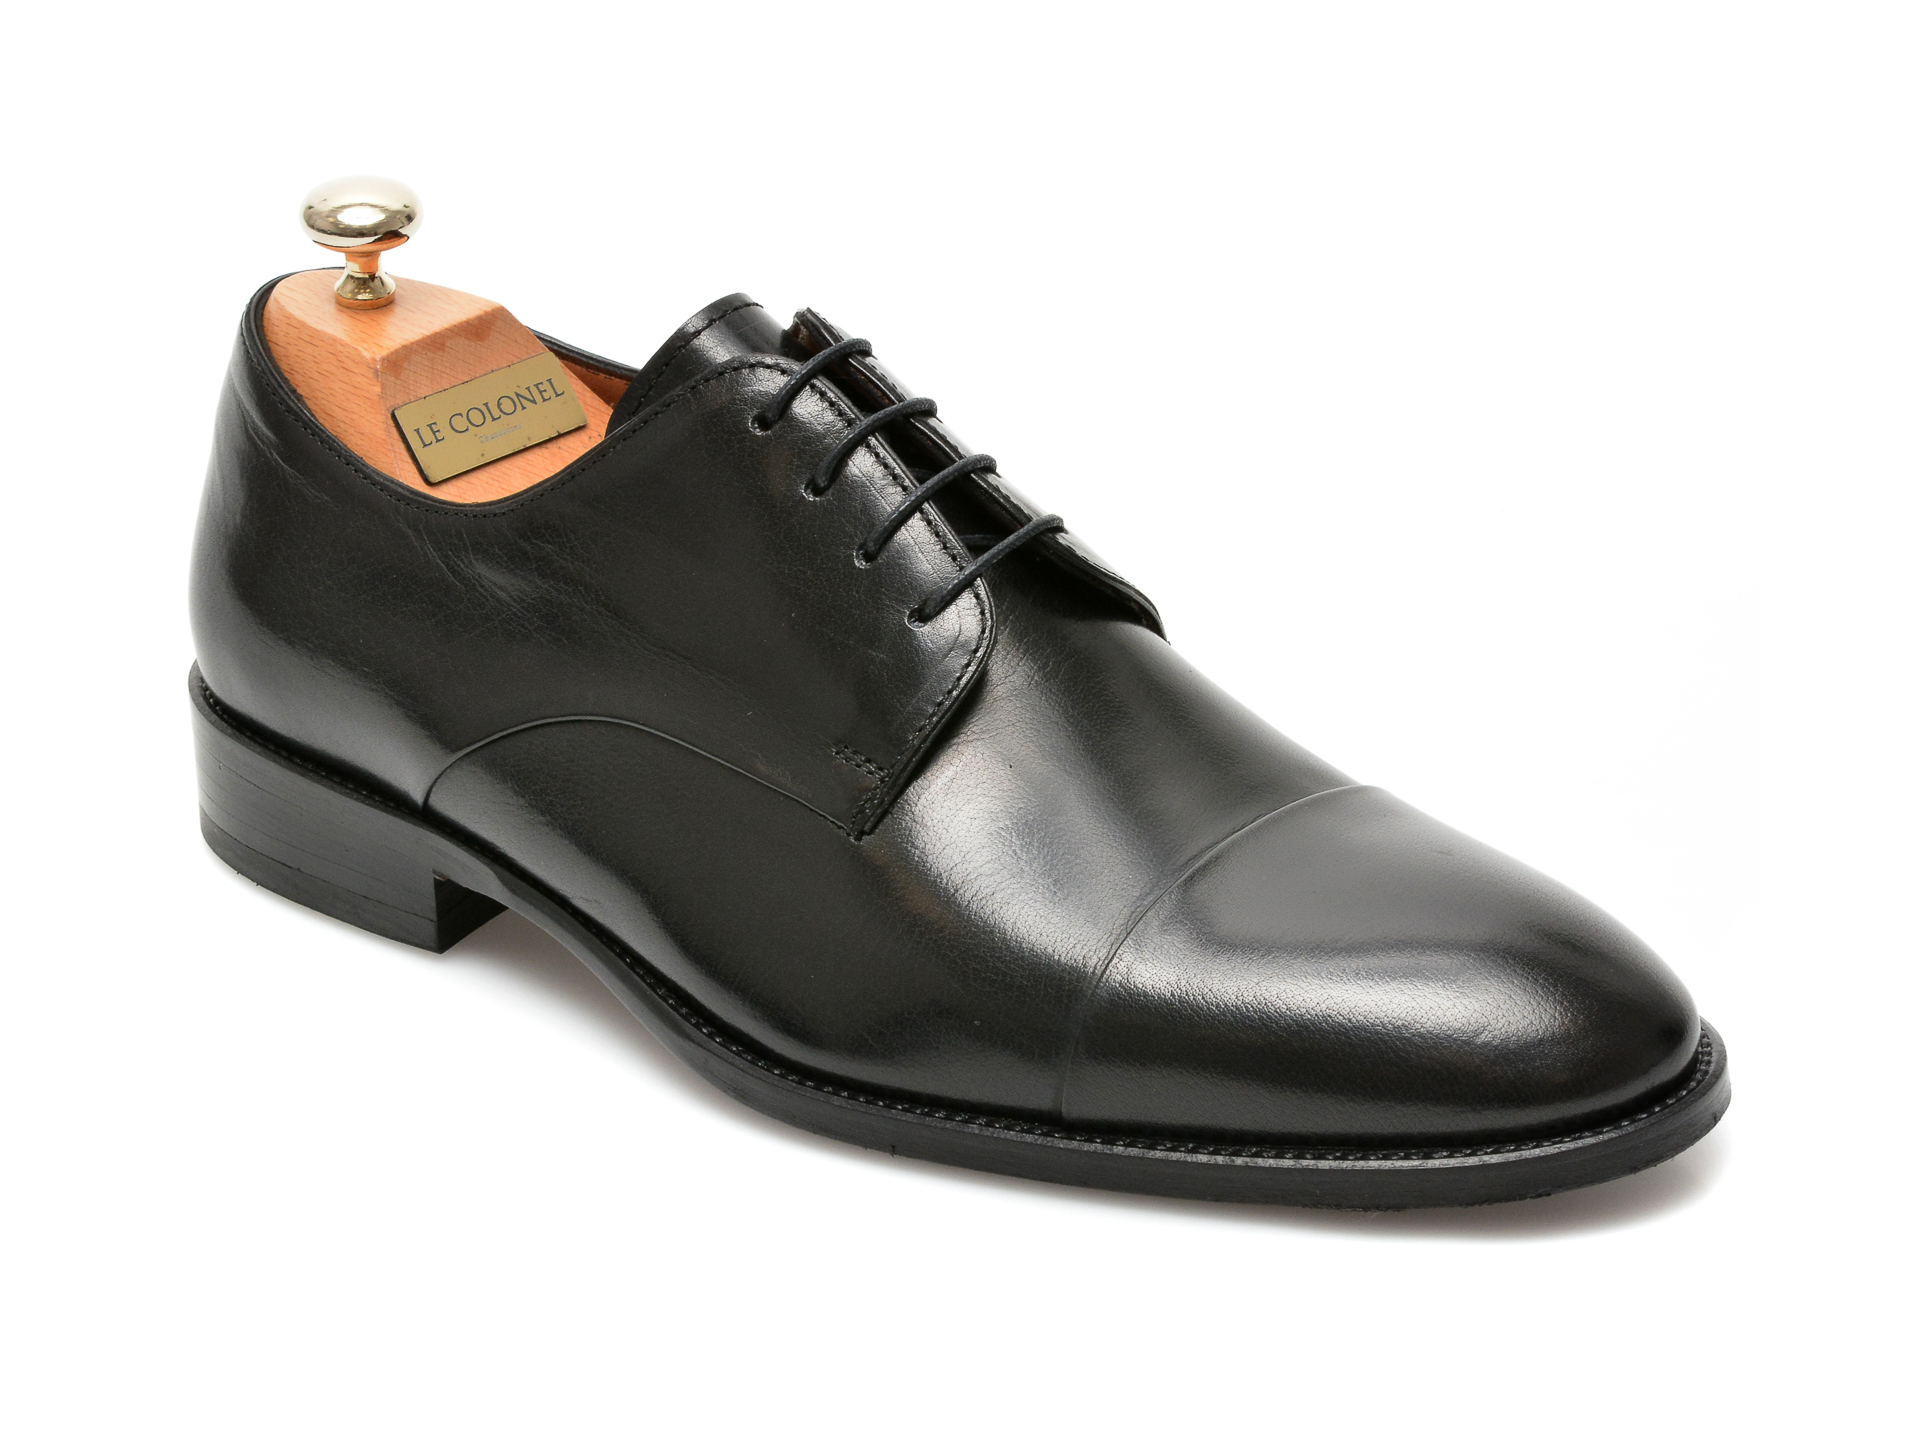 Pantofi LE COLONEL negri, 49809, din piele naturala Le Colonel